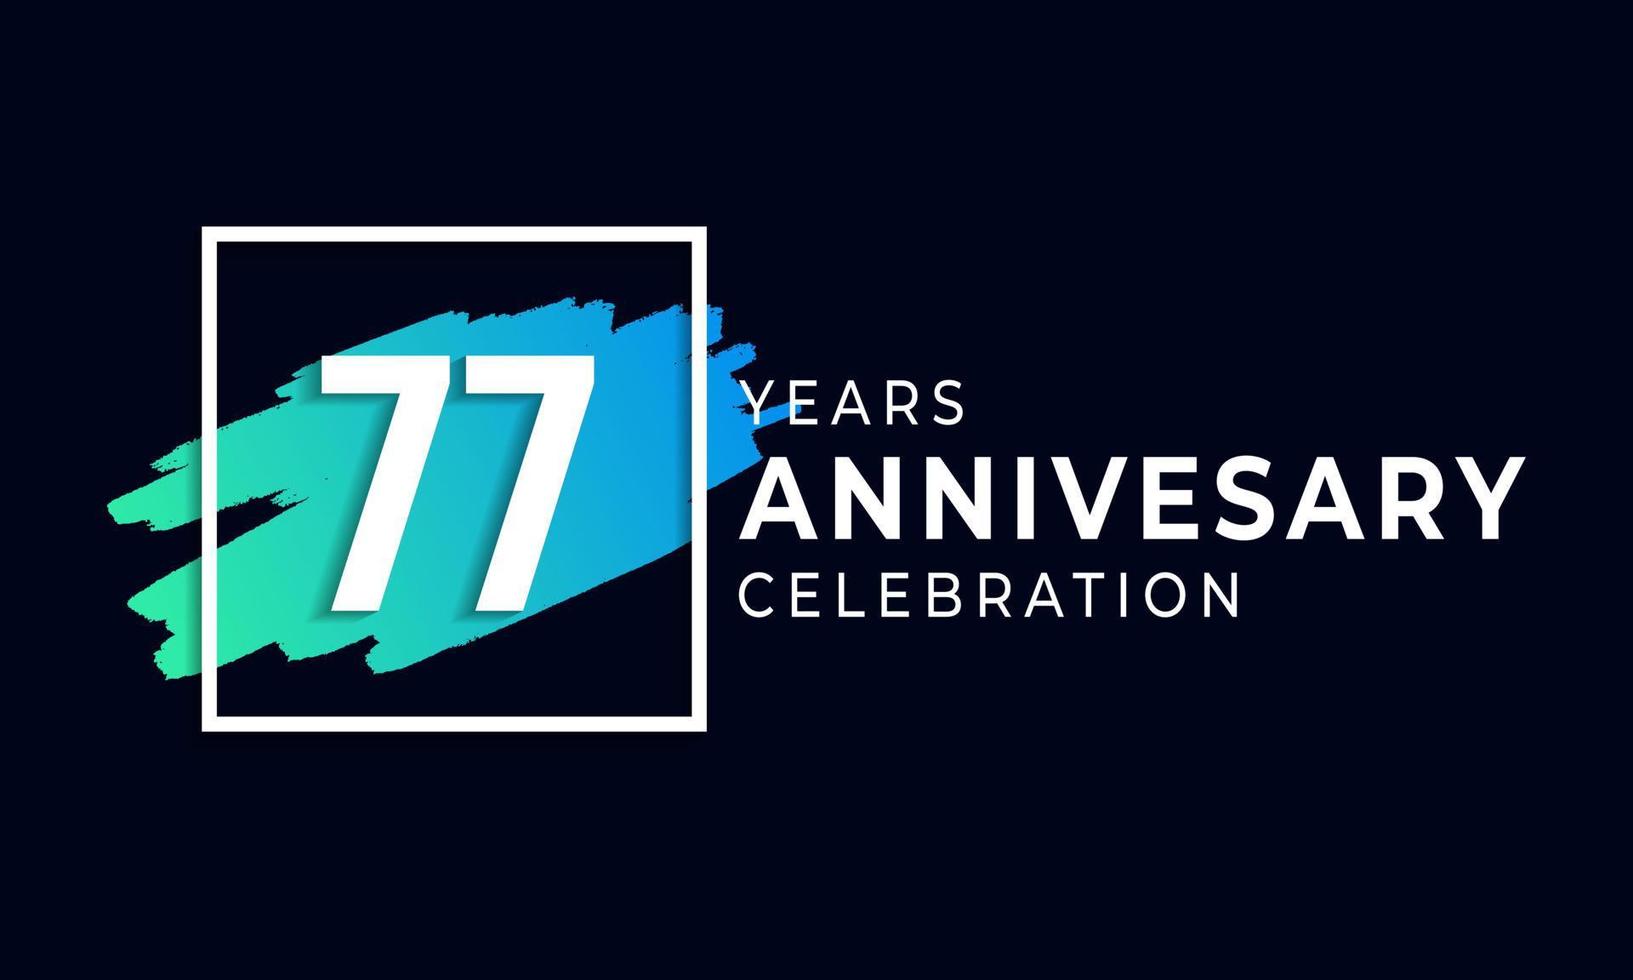 77 års jubileumsfirande med blå pensel och fyrkantig symbol. grattis på årsdagen hälsning firar händelse isolerad på svart bakgrund vektor